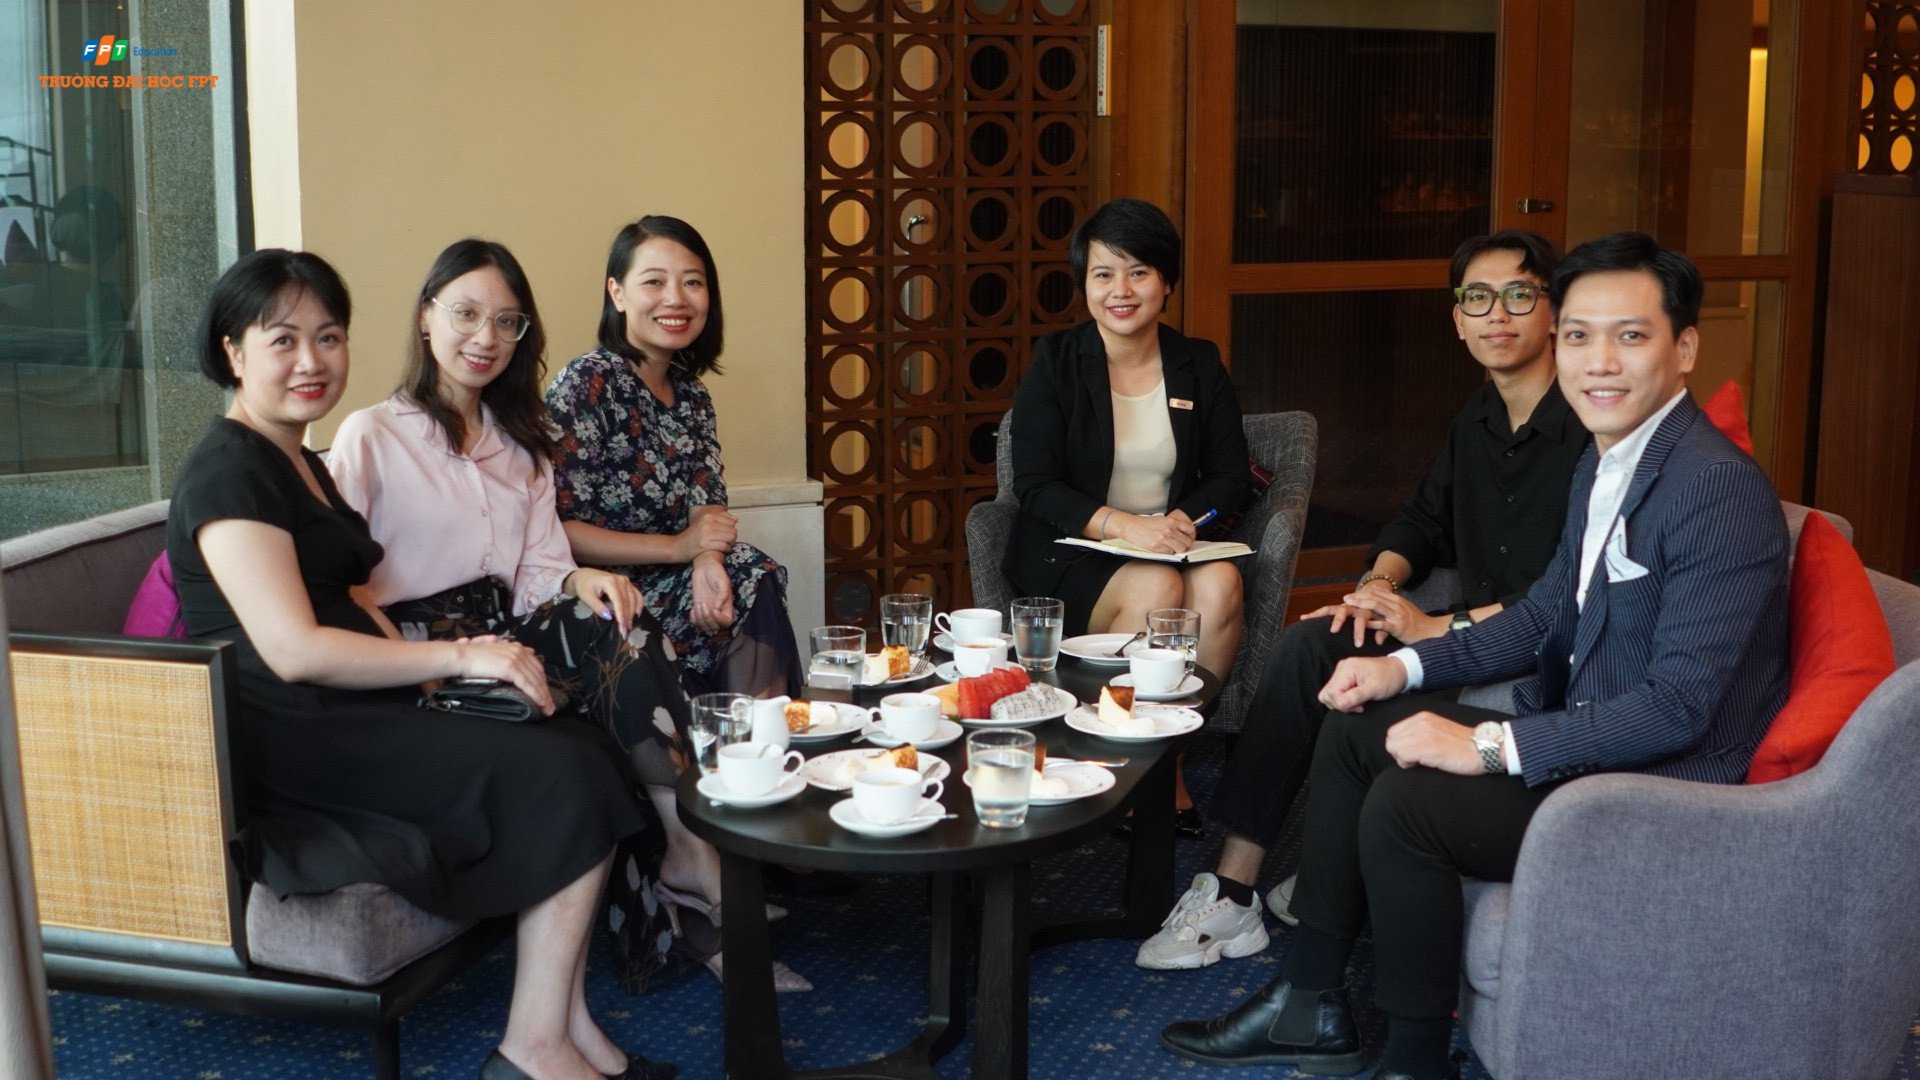 Trường Đại học FPT mở rộng hợp tác với nhiều khách sạn 5 sao tại Hà Nội